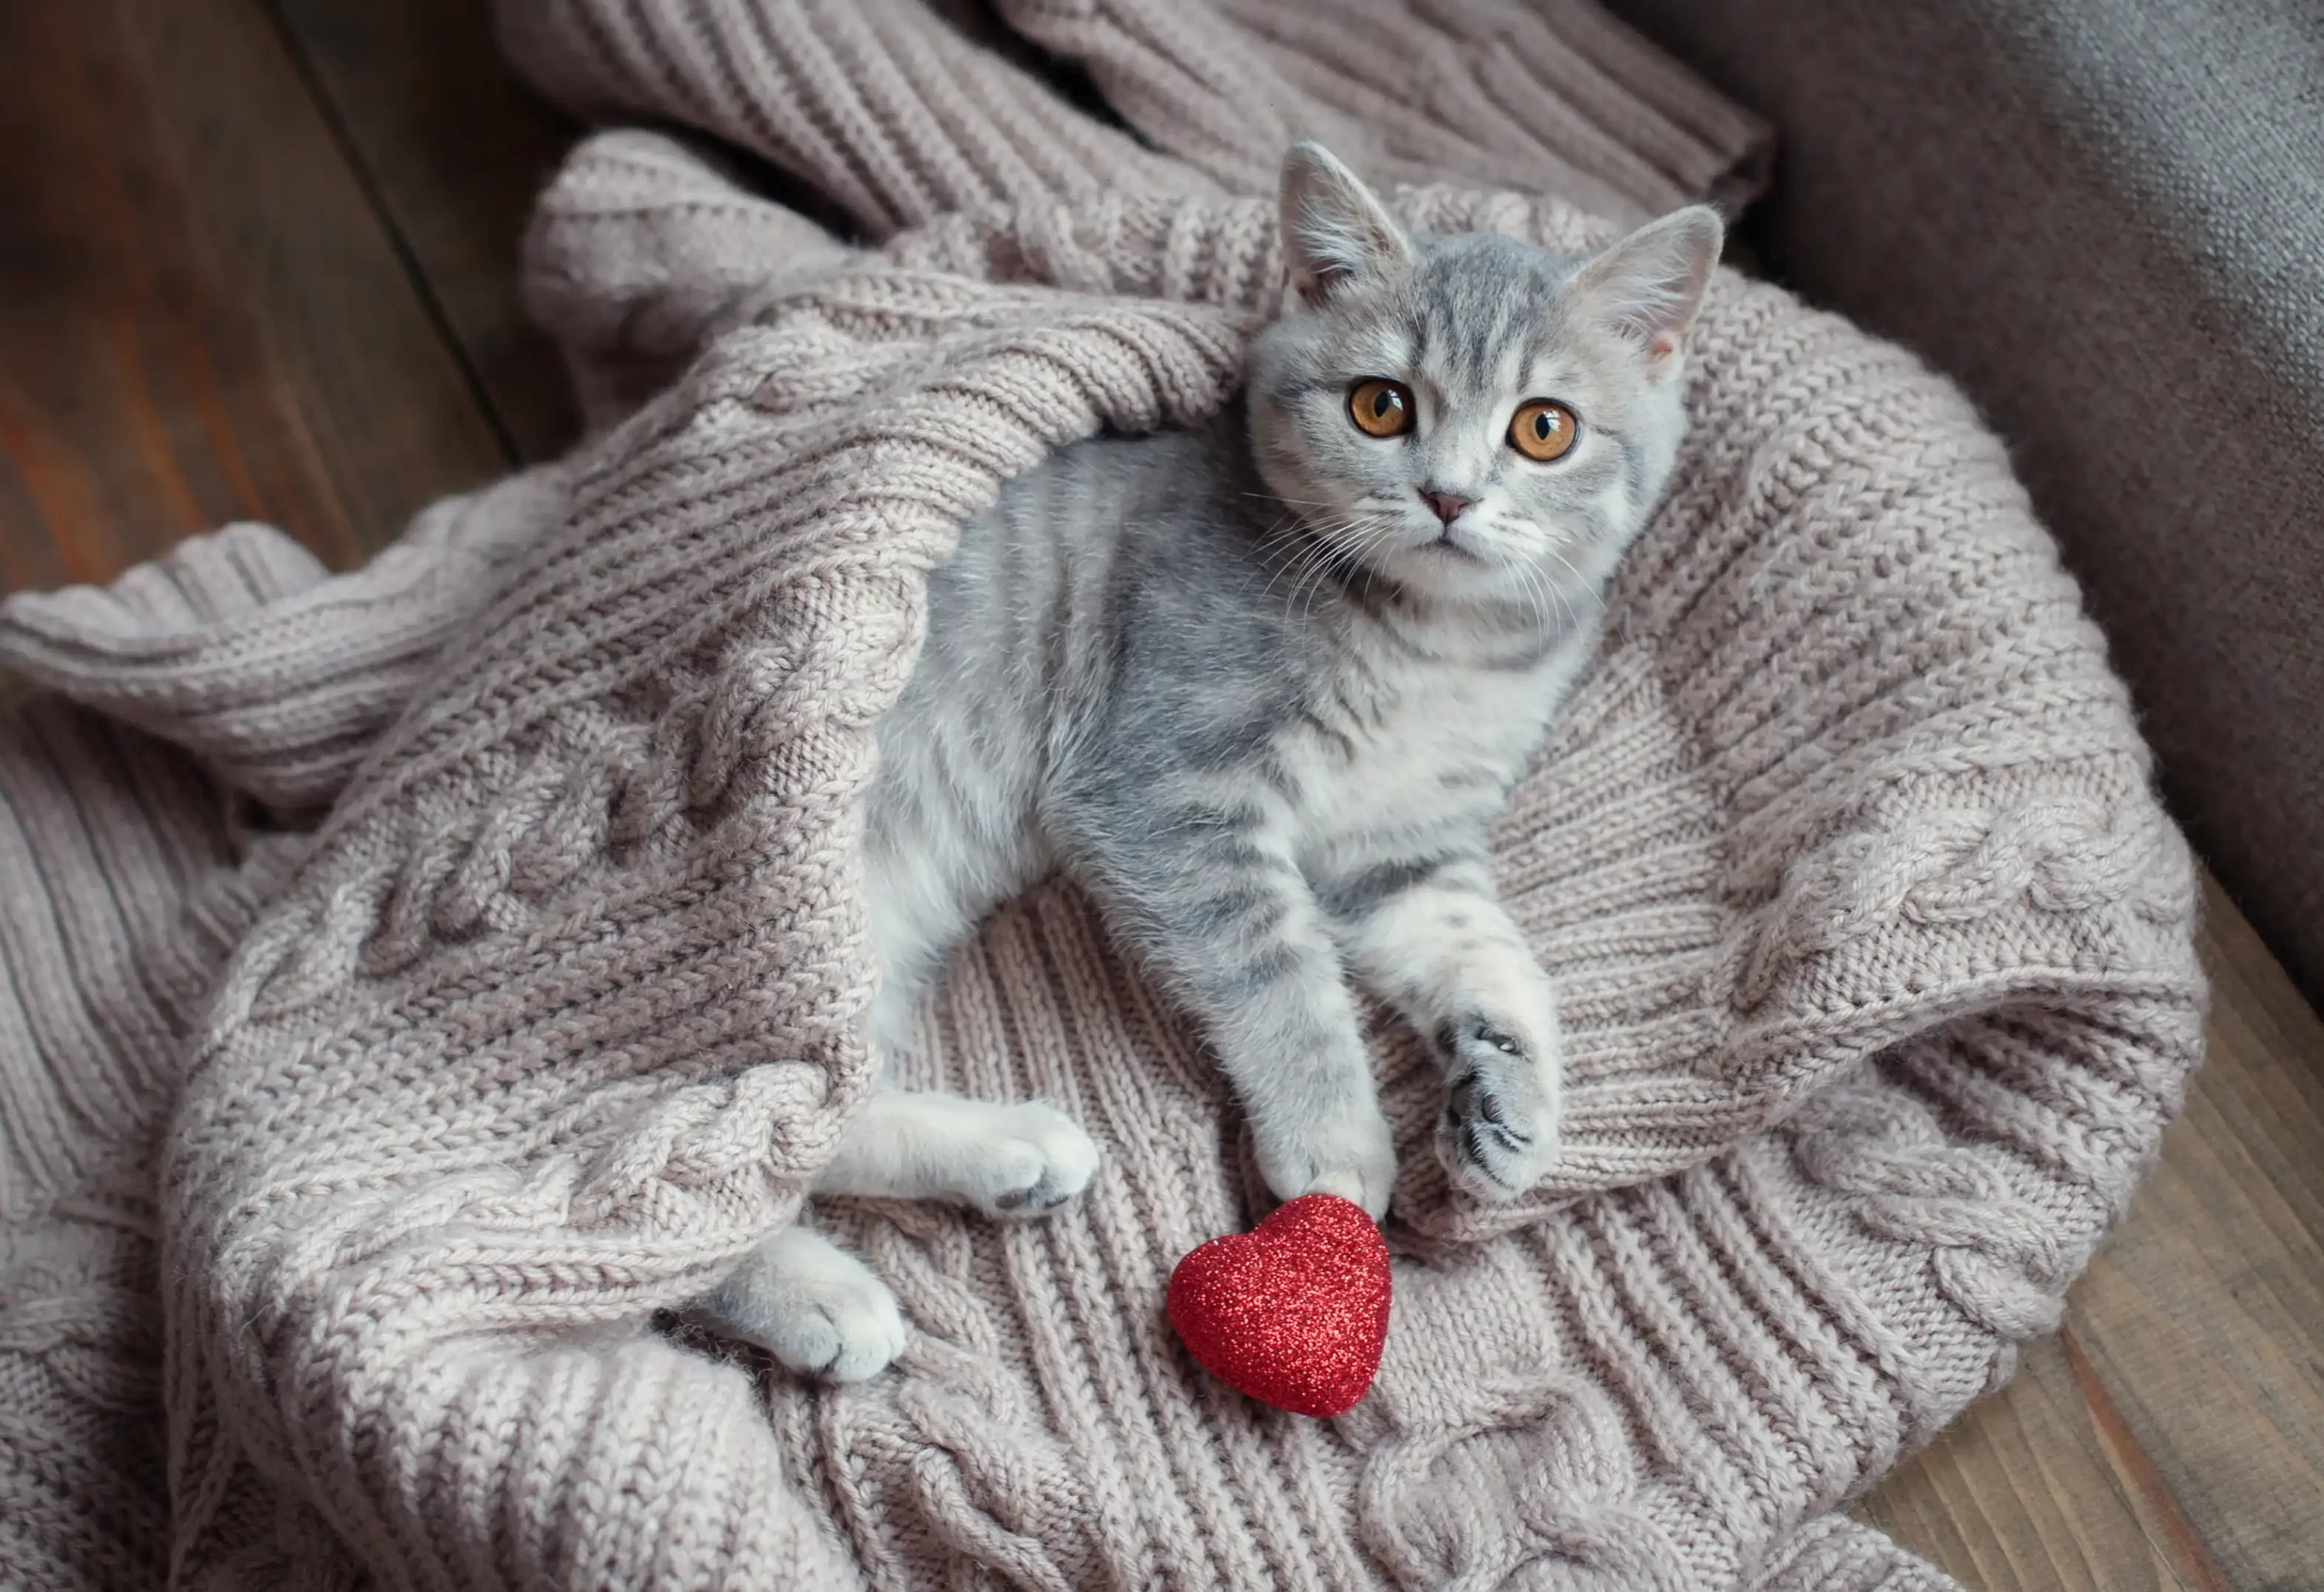 Little kitten in a blanket. Oneplan Pet Insurance. Getting pet insurance early. Pets24